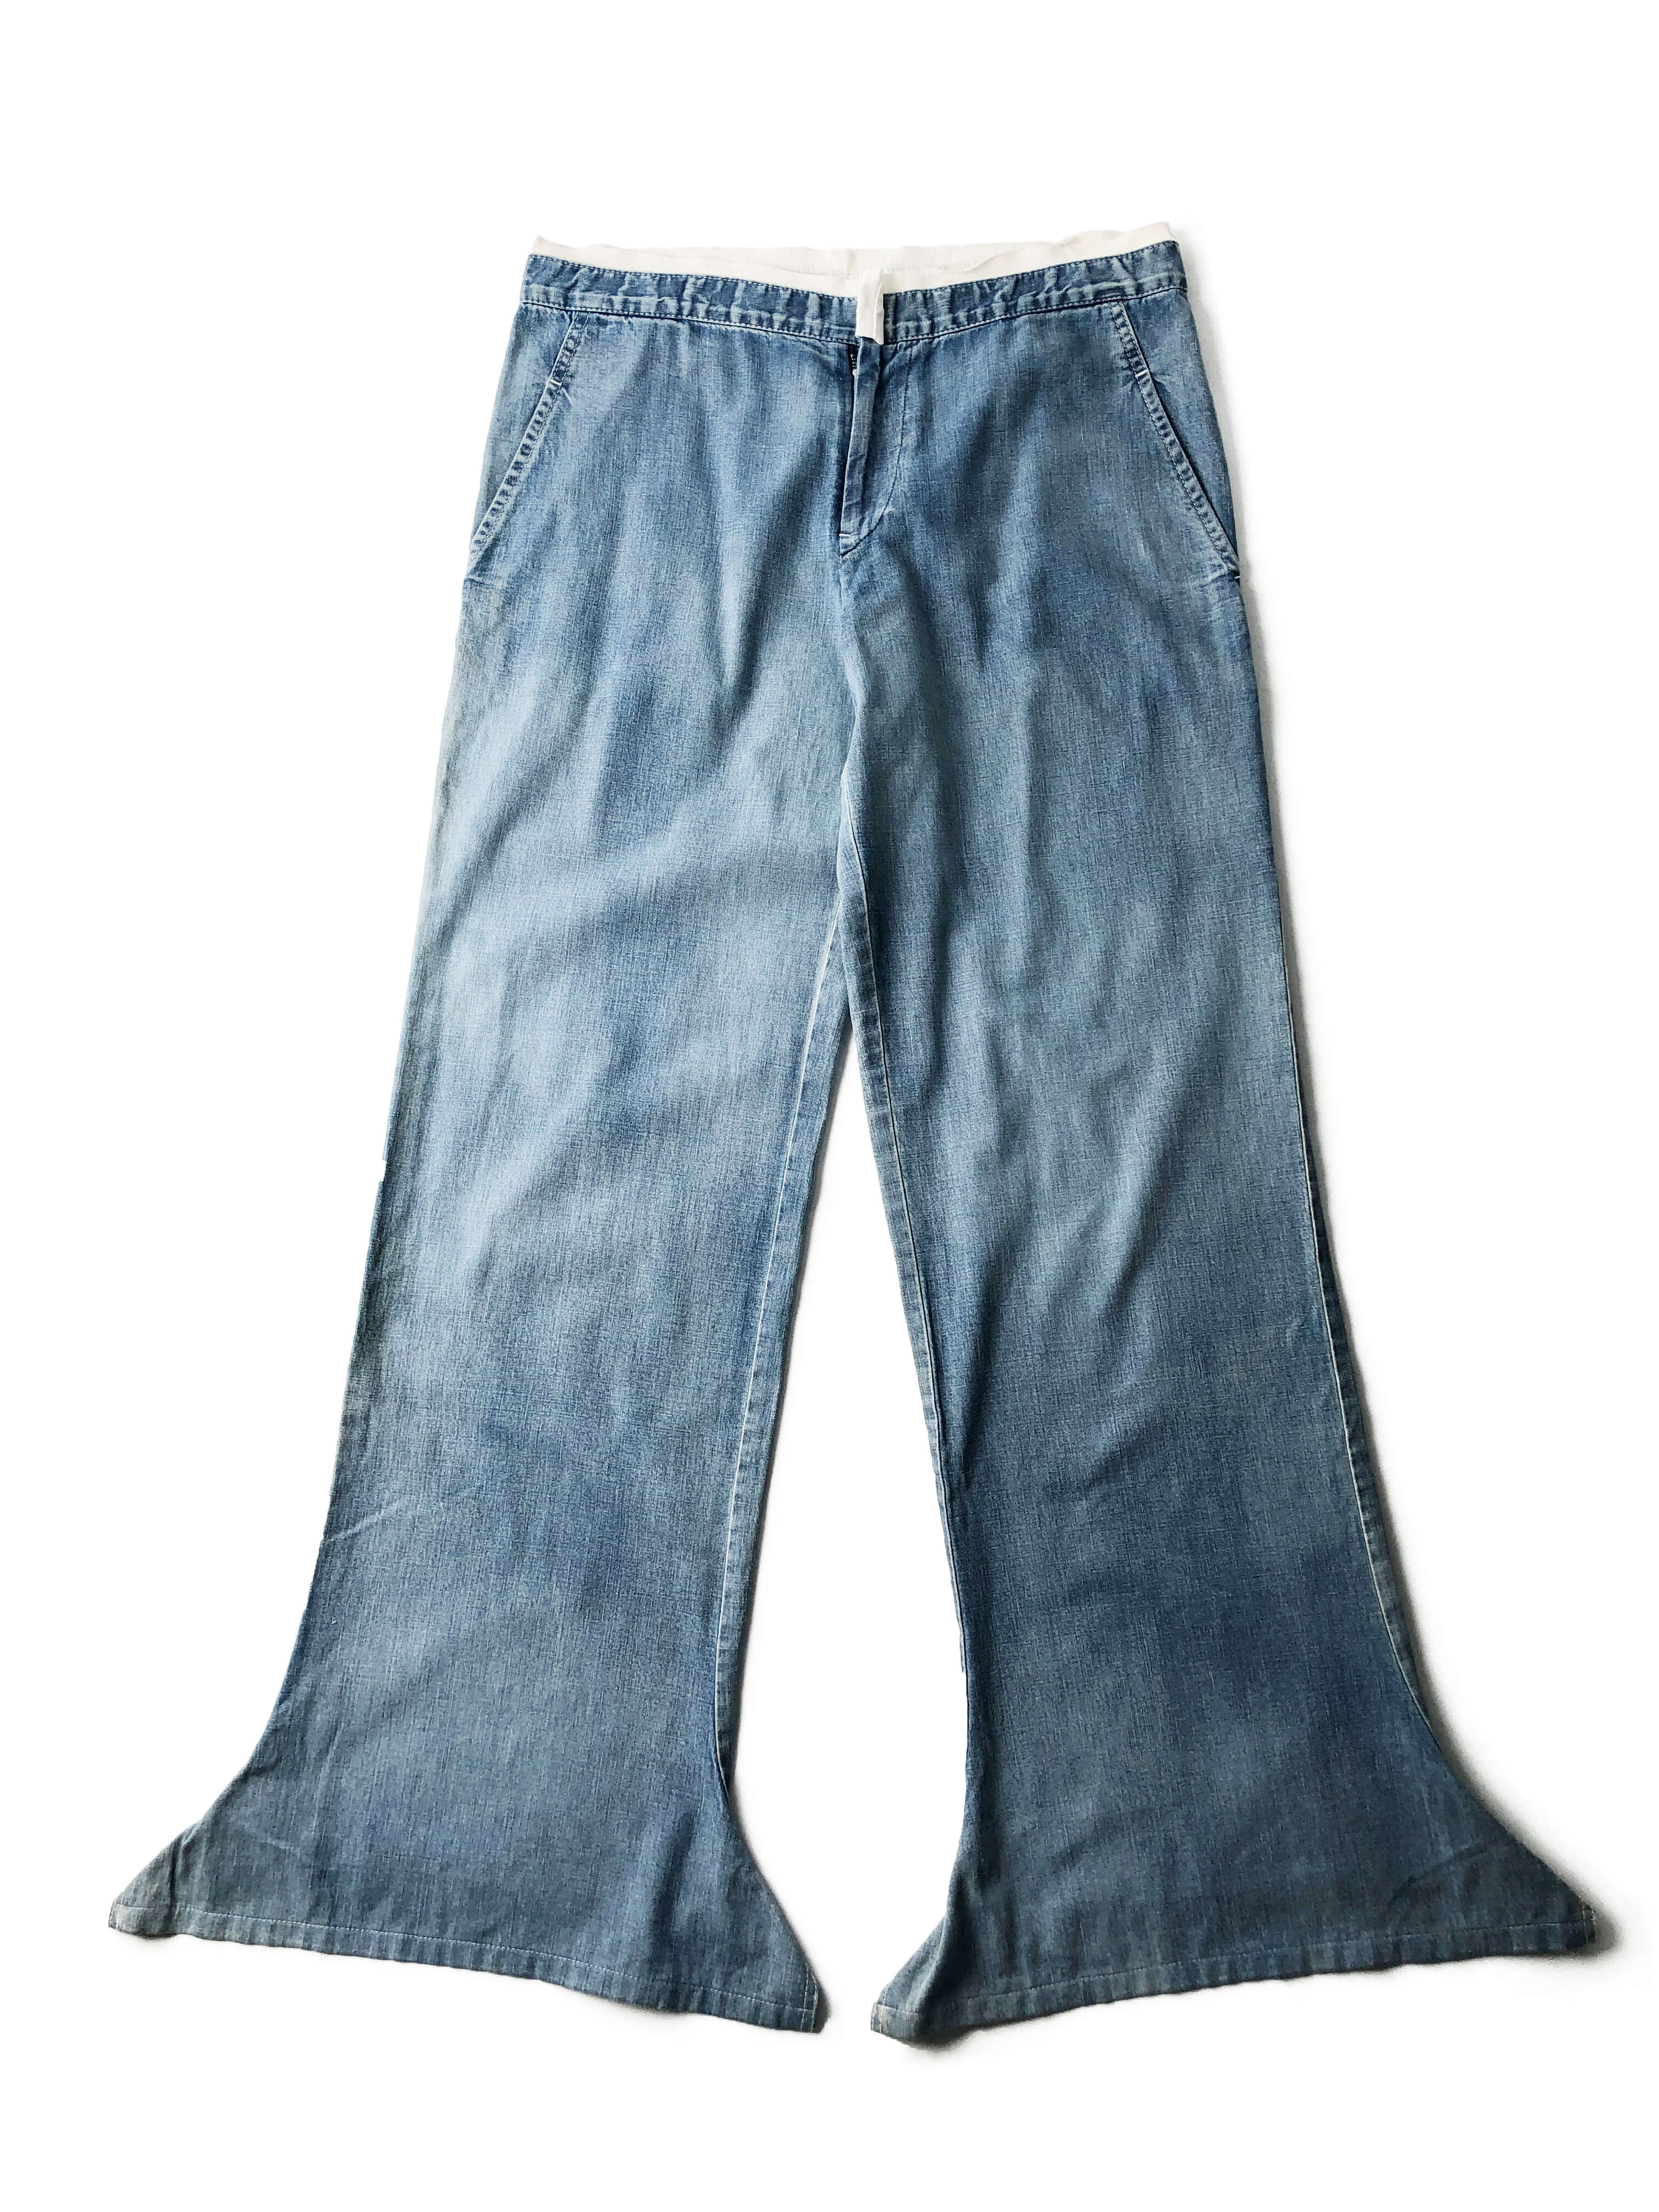 Yohji Yamamoto 2004 spring/summer boot-cut pants